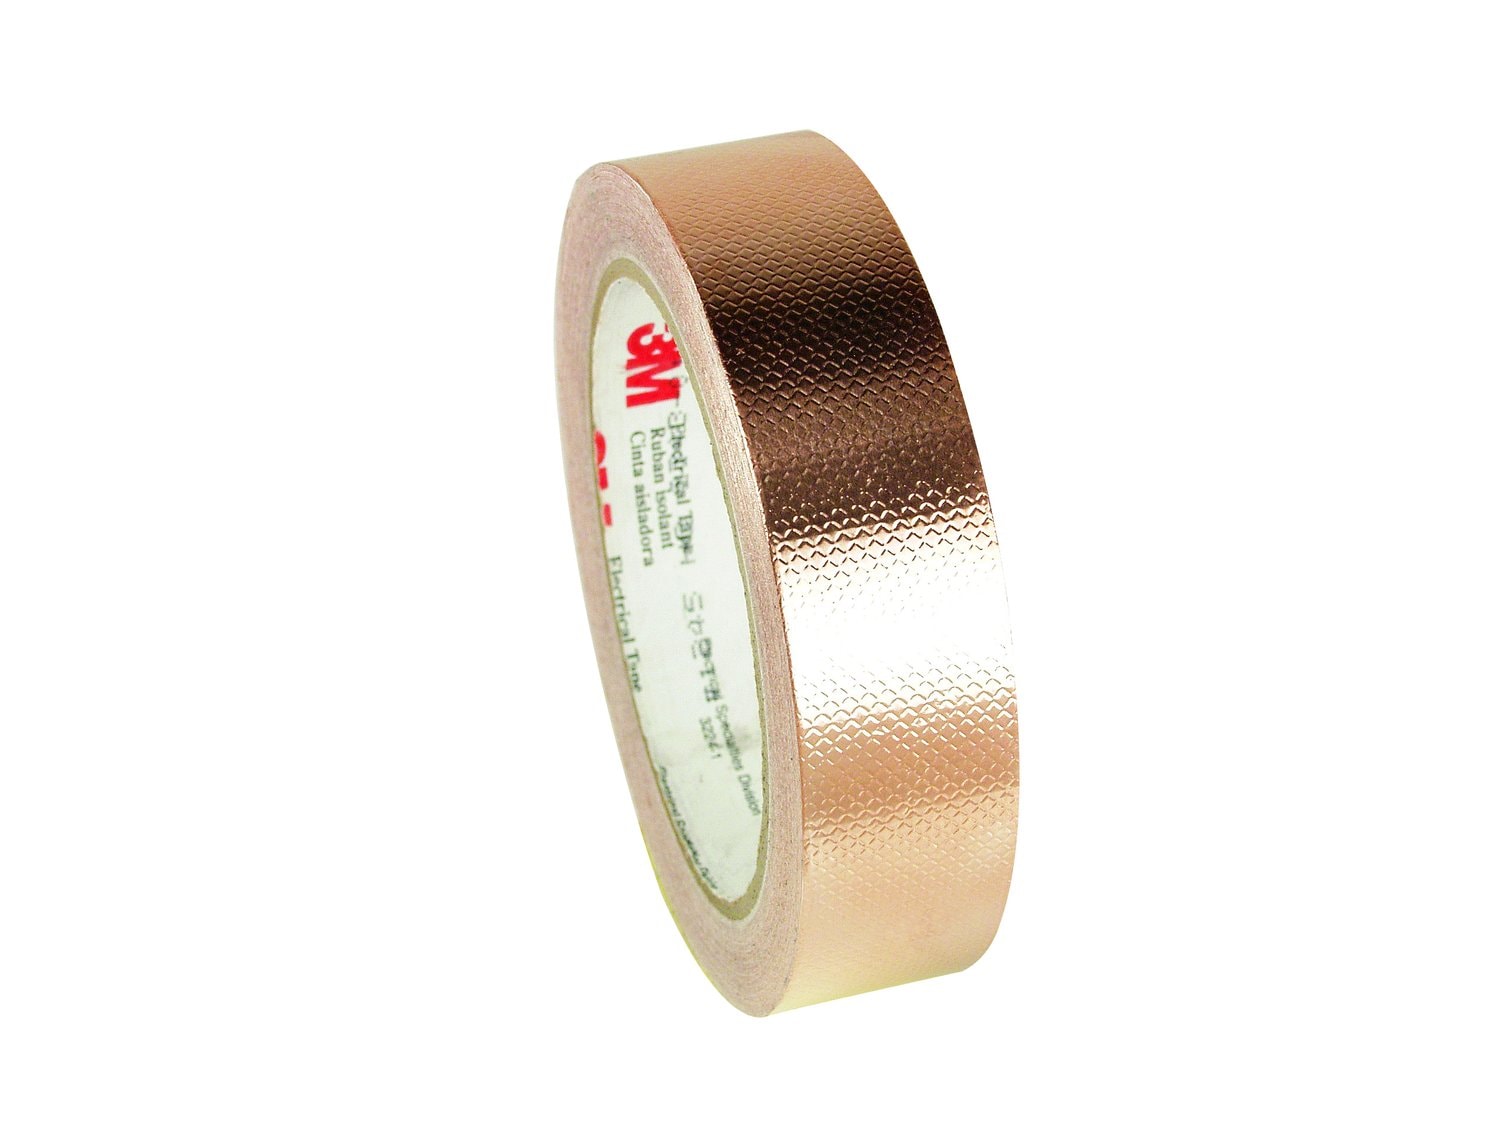 7010398891 - 3M Embossed Copper Foil EMI Shielding Tape 1245, 1-1/2 in x 18 yd, 3 in
Paper Core, 6 Rolls/Case